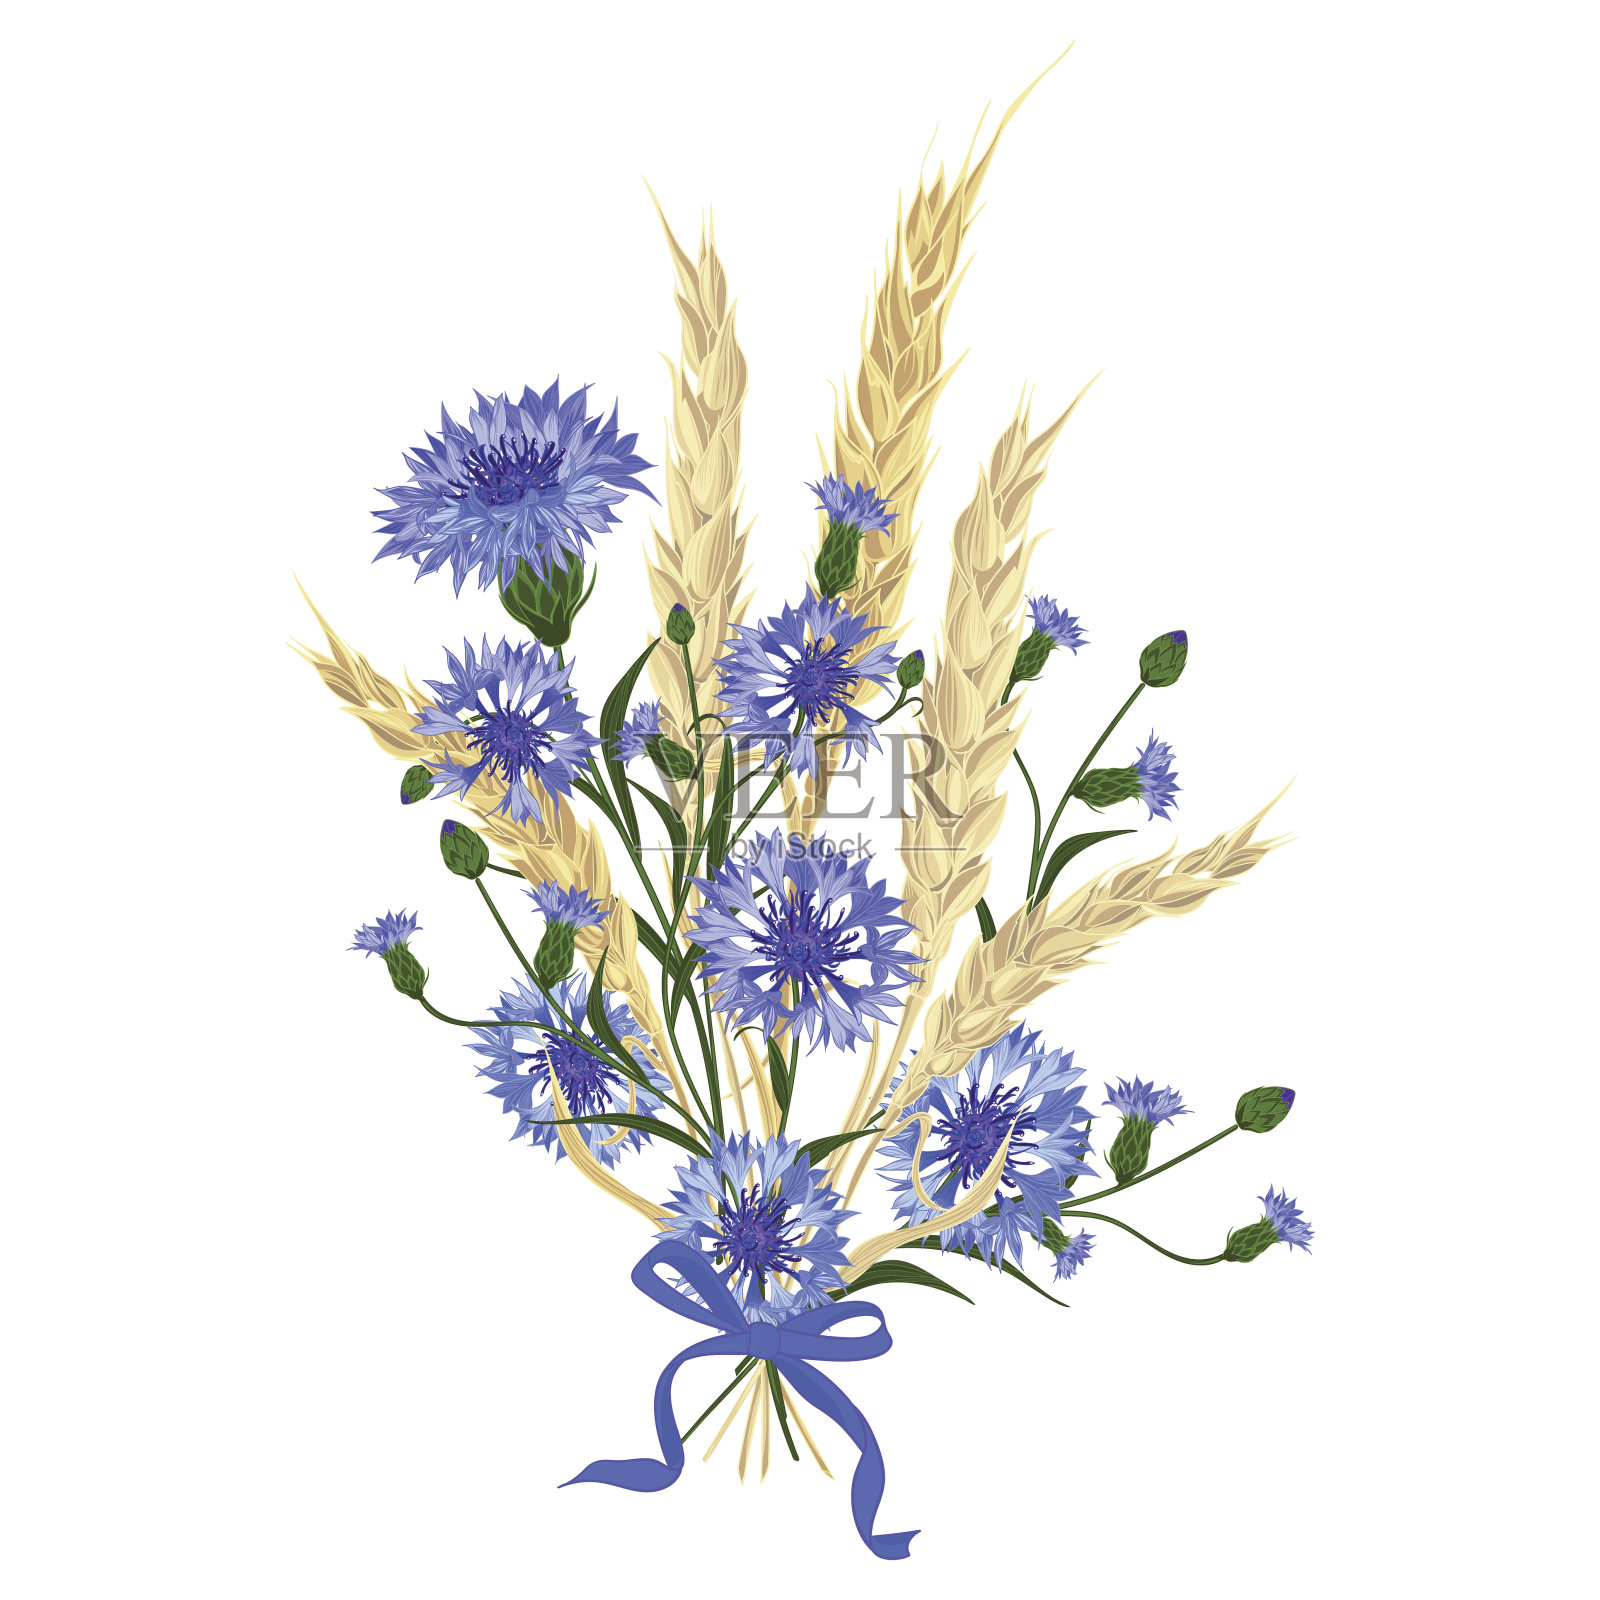 一束美丽的矢车菊和小麦小穗插画图片素材